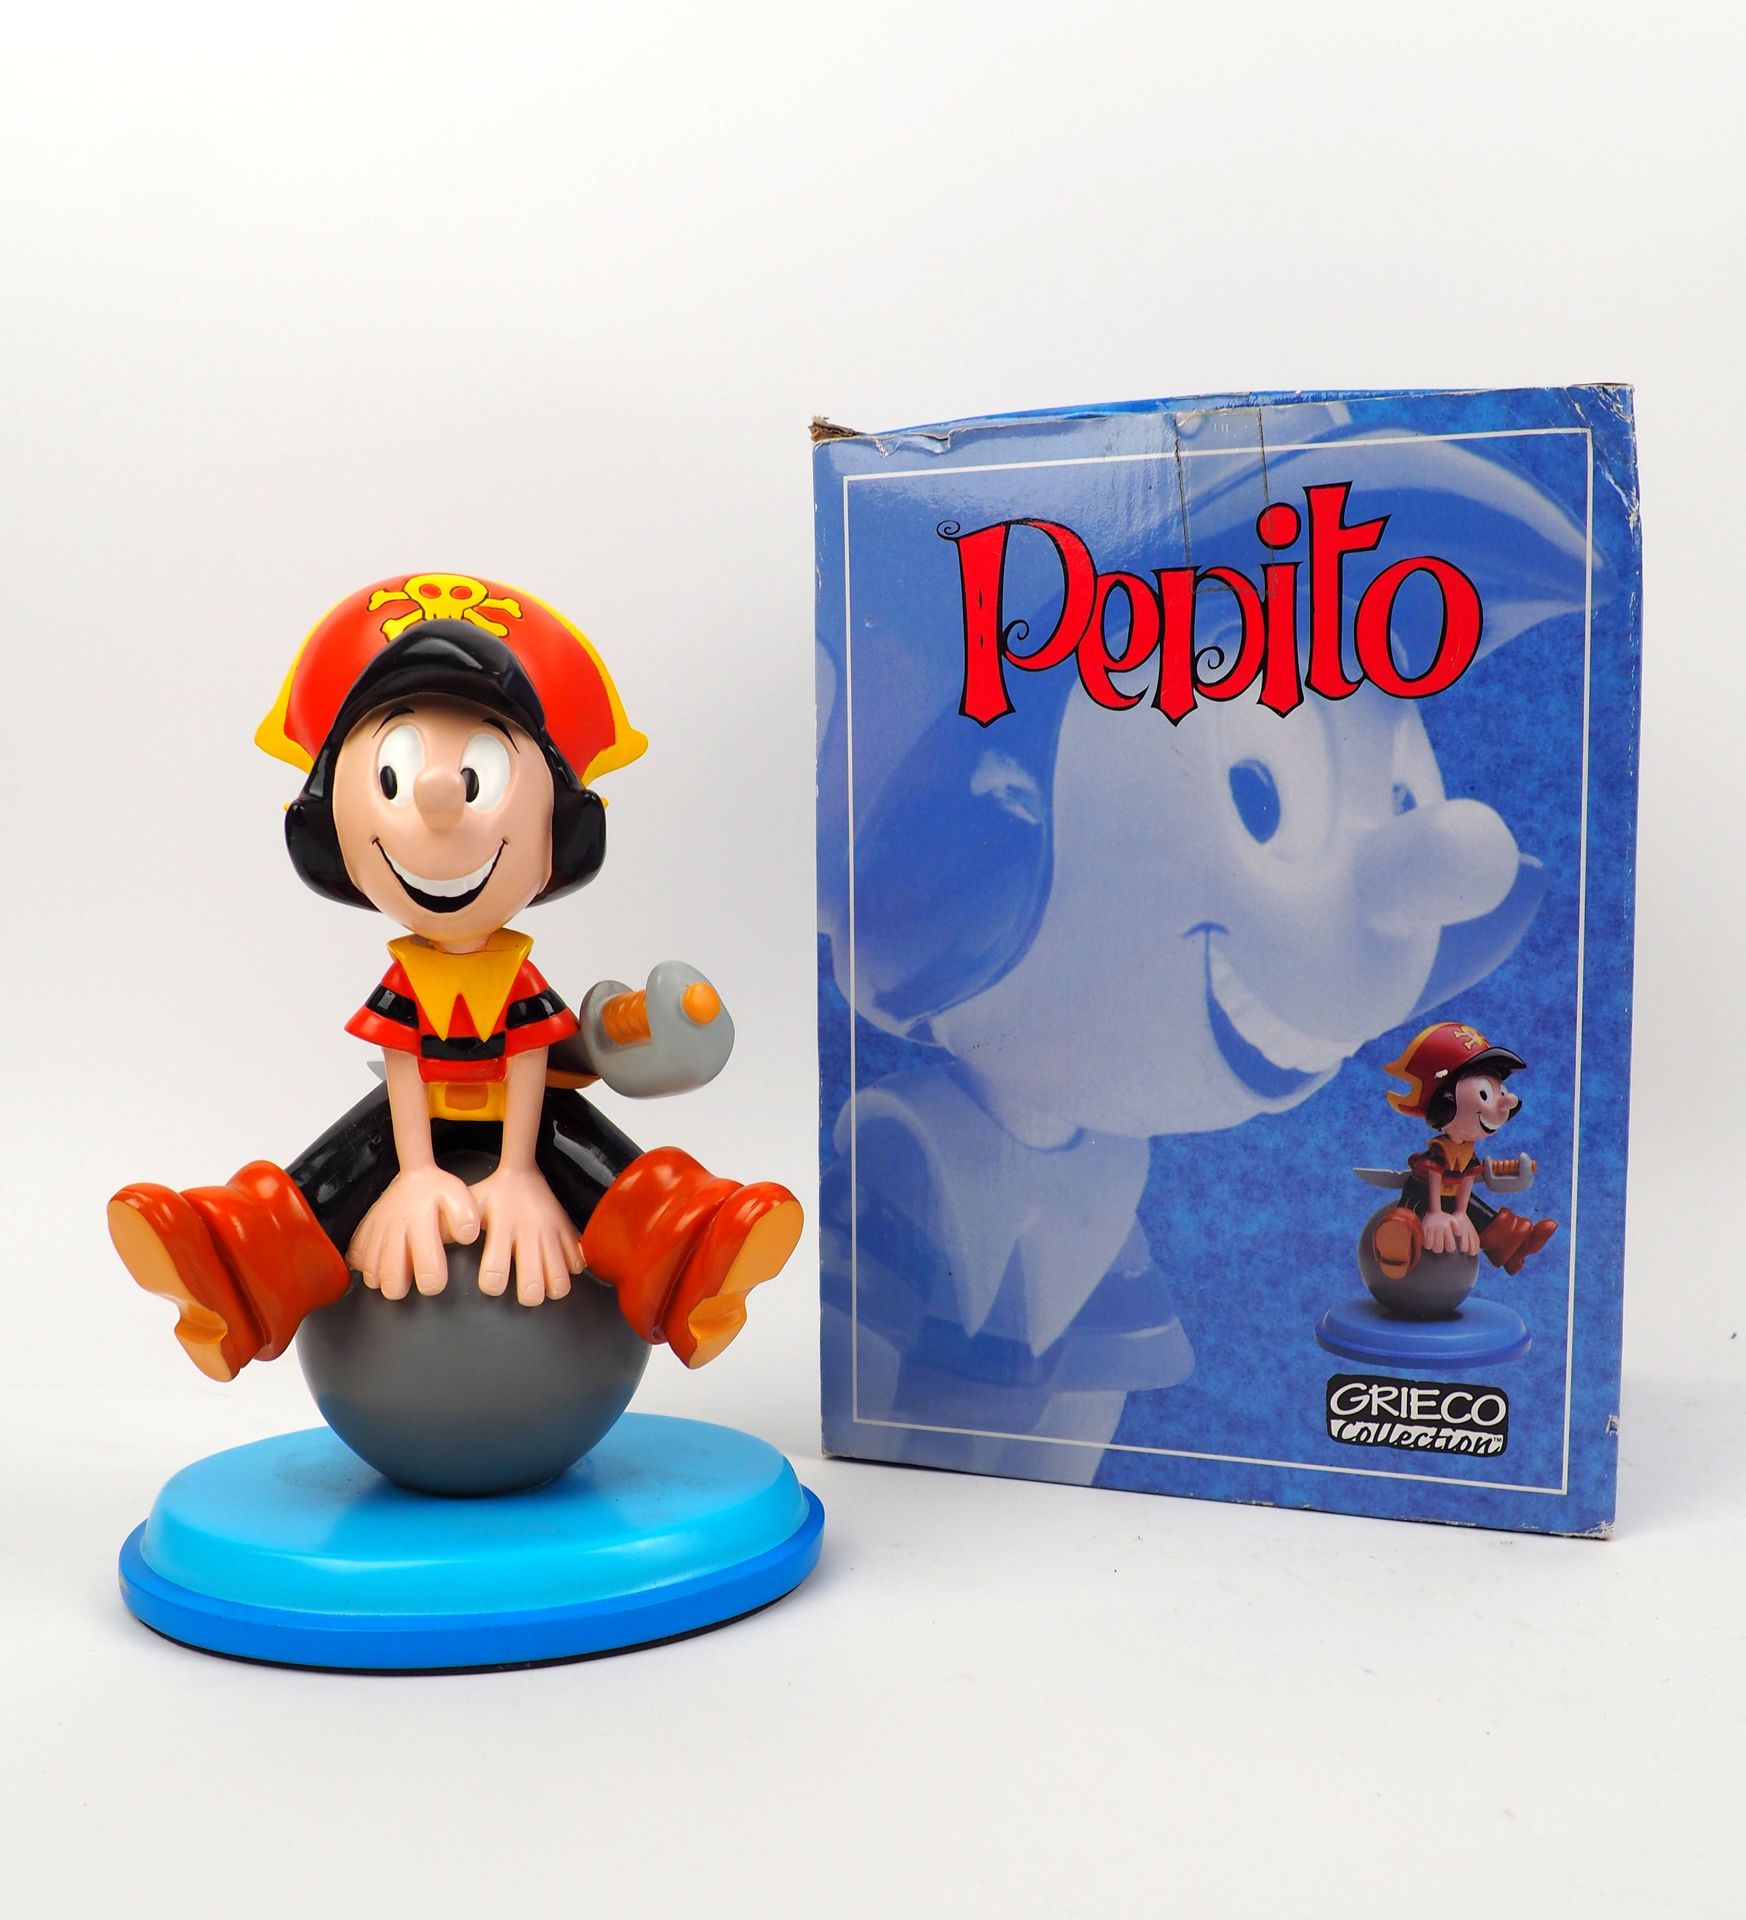 Null BOTTARO
Pepito
Figurín editado por Grieco, edición limitada de 500 ejemplar&hellip;